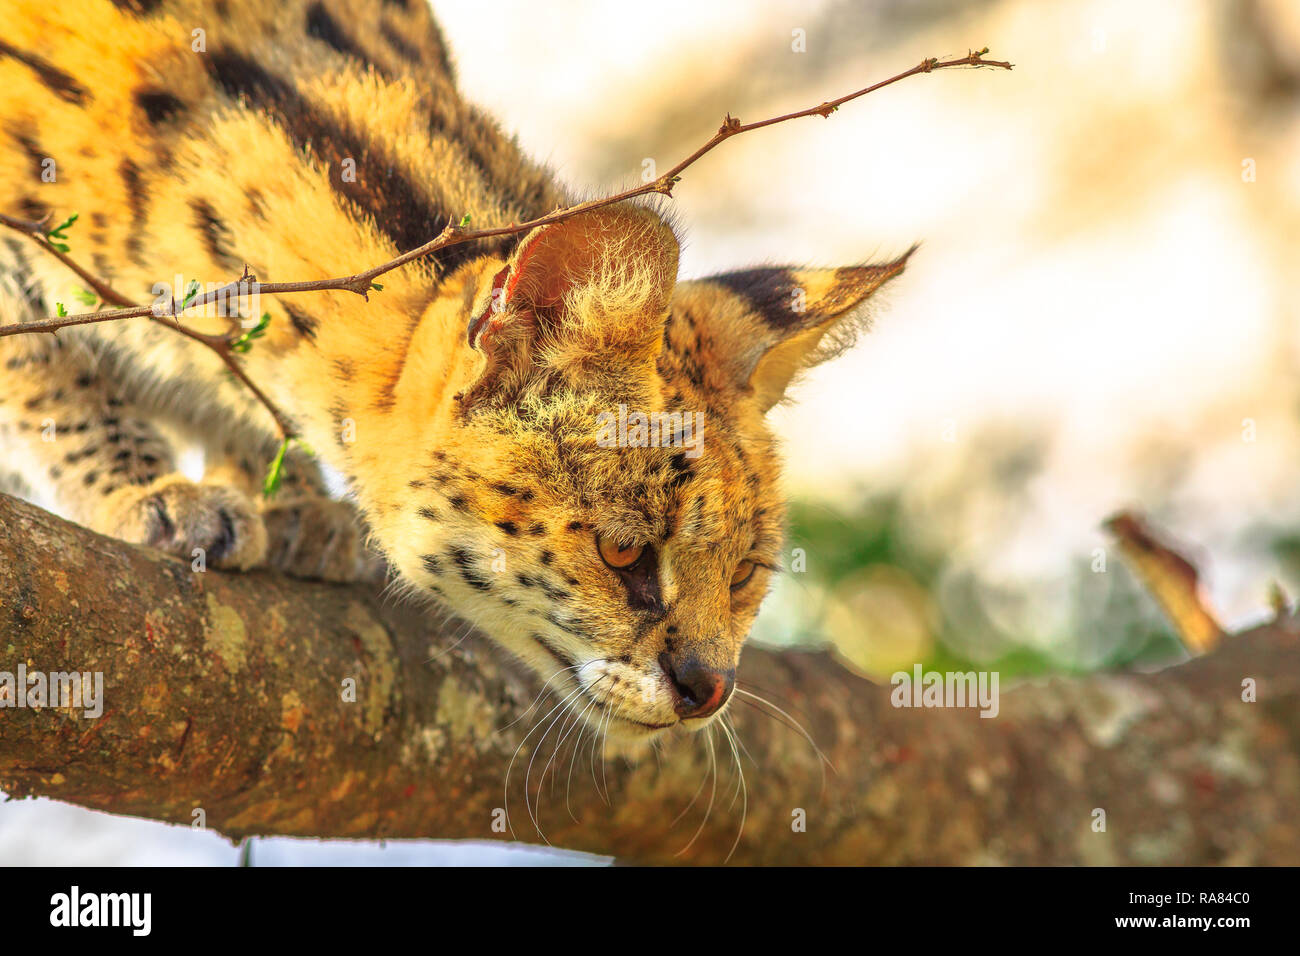 Portrait de Serval sur un arbre dans l'habitat naturel avec arrière-plan flou. Le nom scientifique est Leptailurus serval. Le Serval est un chouette chat sauvage originaire d'Afrique. Vue de côté. Banque D'Images